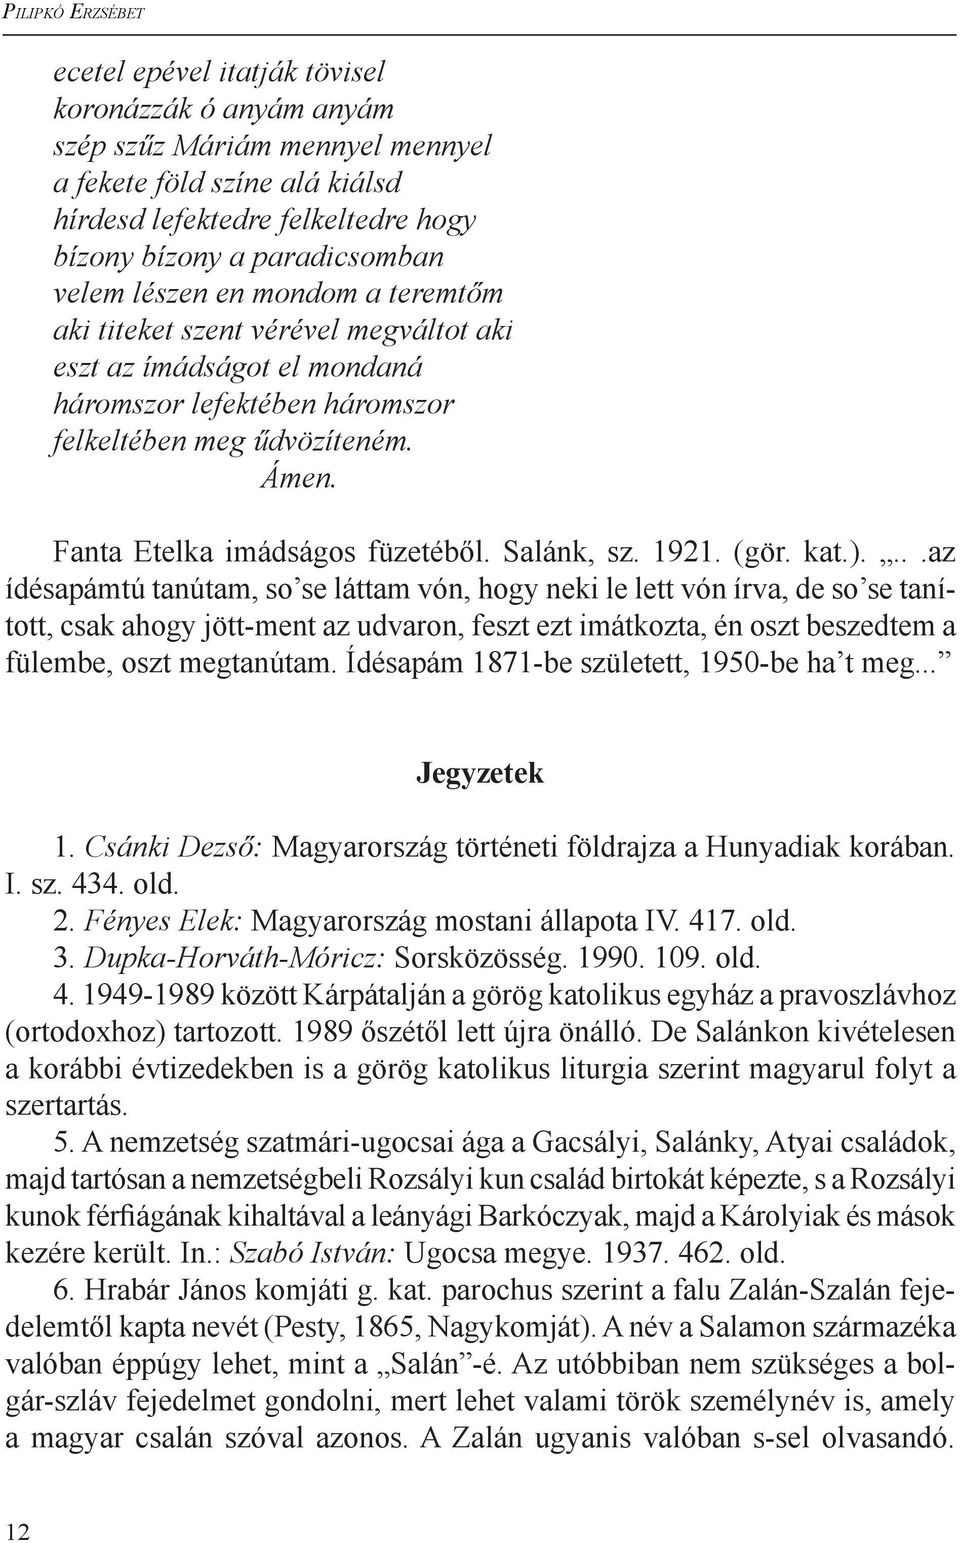 Fanta Etelka imádságos füzetéből. Salánk, sz. 1921. (gör. kat.).